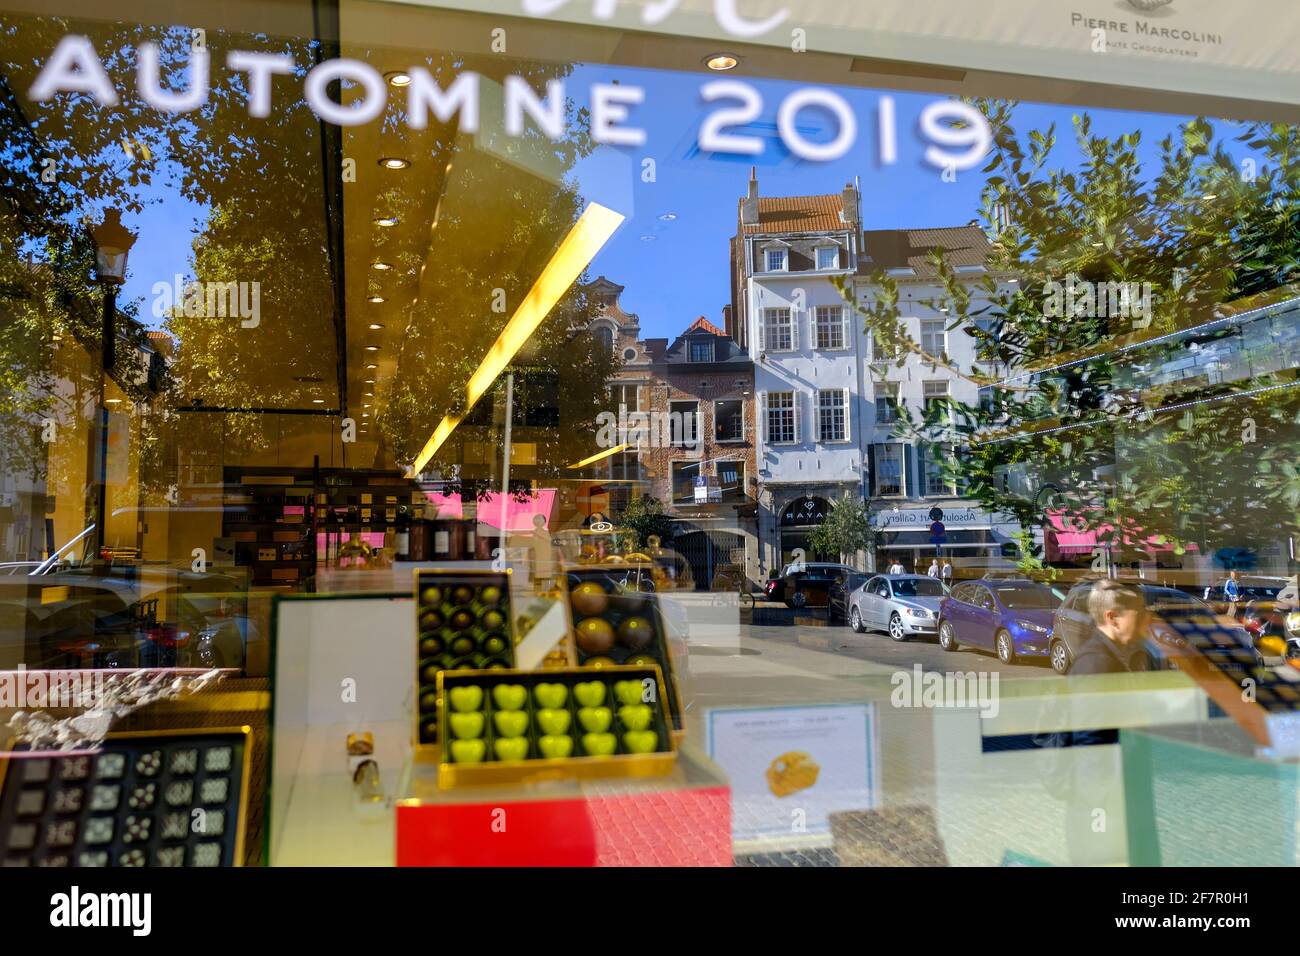 21.09.2019, Bruessel, Belgien - Spiegelung im Schaufenster einer Filiale des Chocolatiers Pierre Marcolini an der Place du Grand Sablon / Grote Zavel Stock Photo